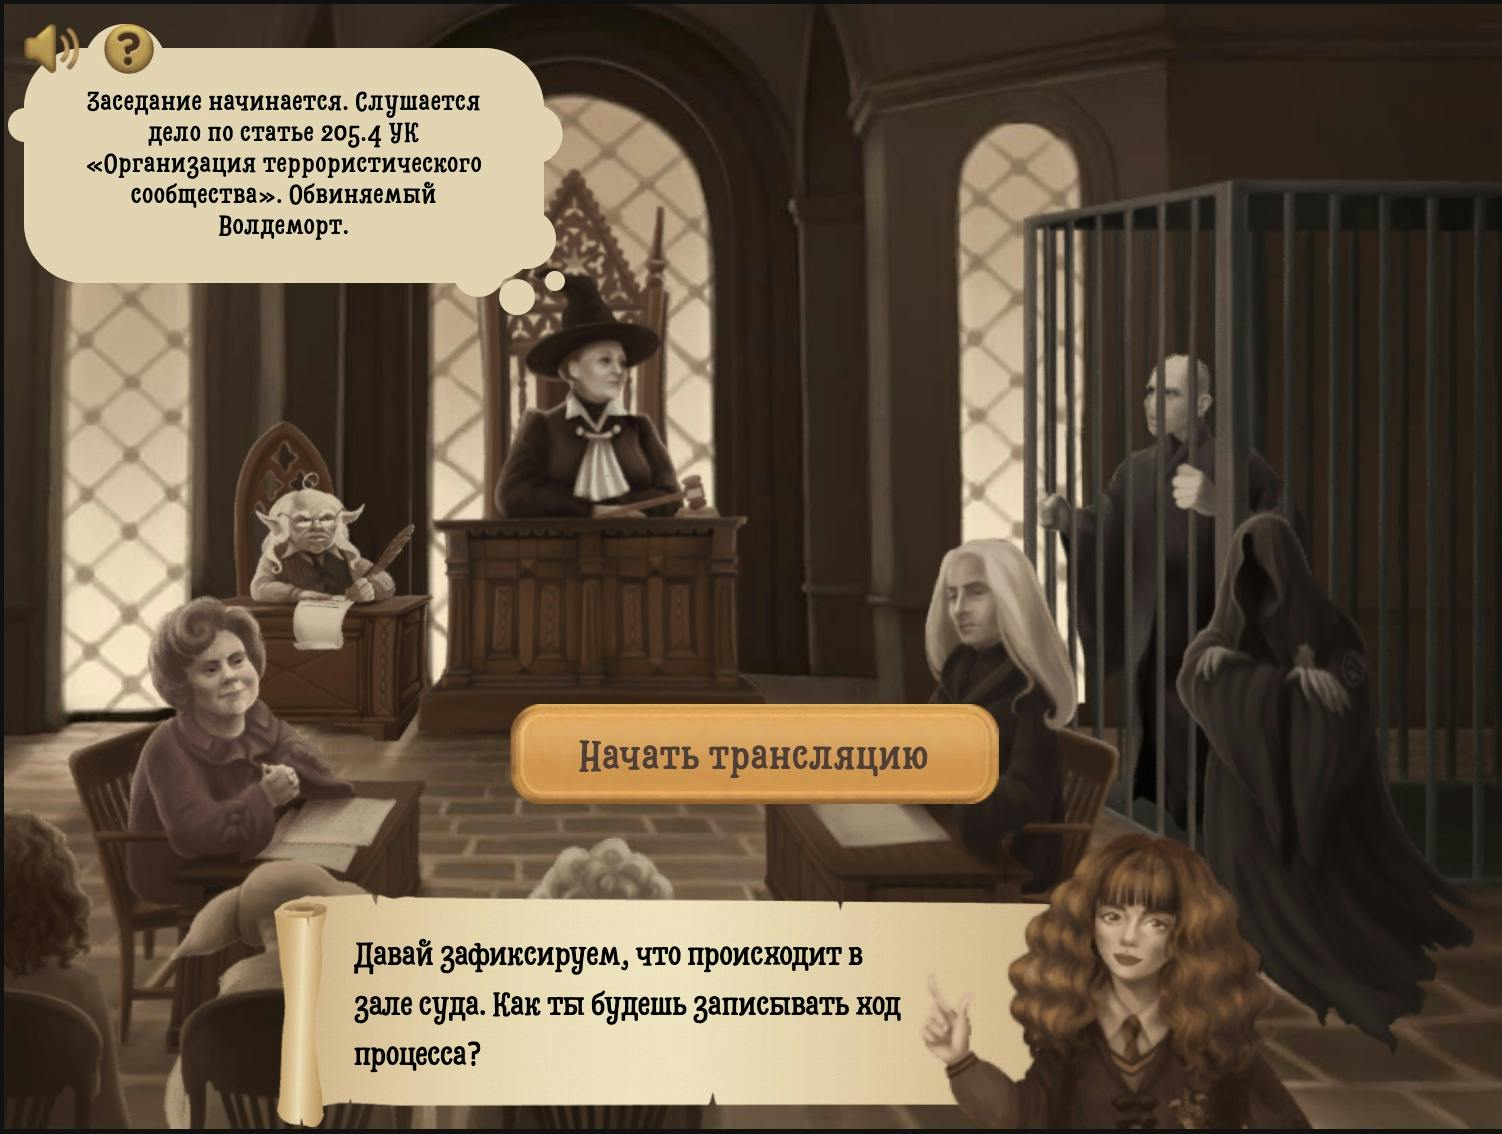 JustMagic - игра про судебную систему в России